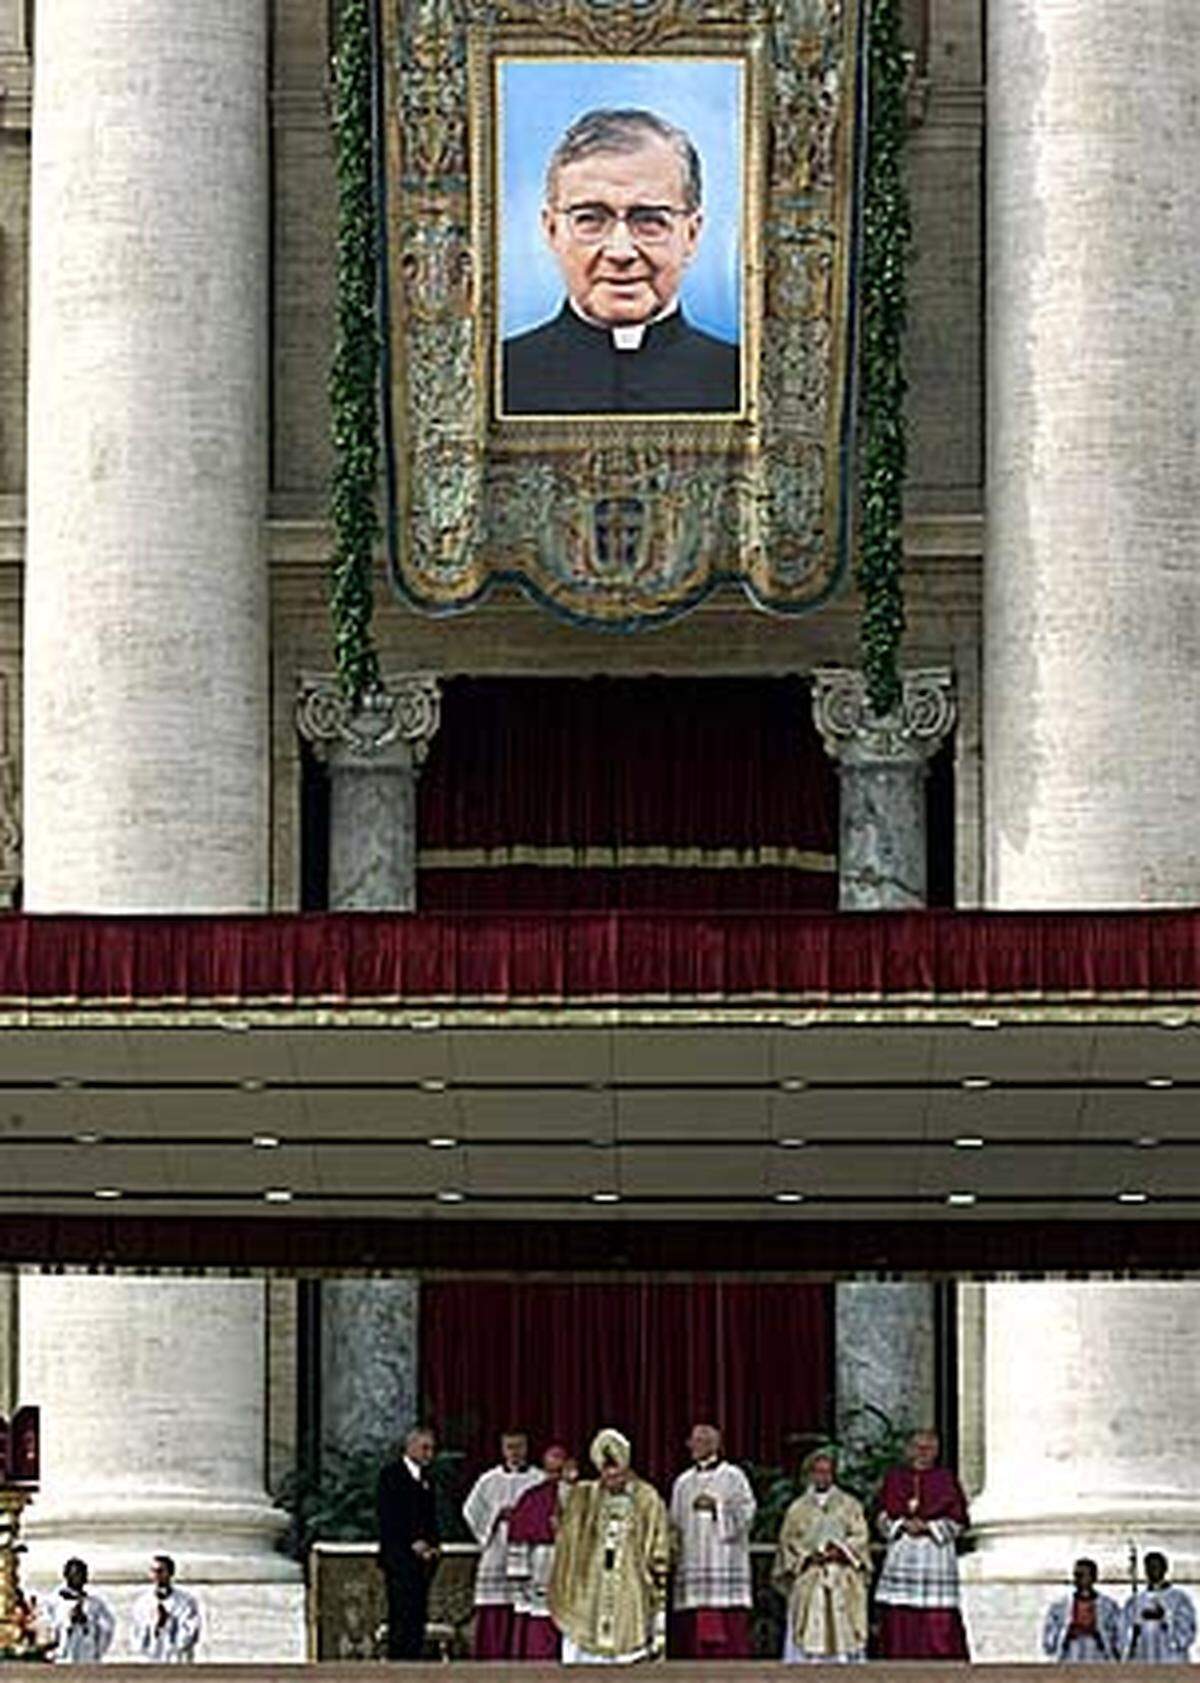 Die Personalprälatur Opus Dei ist eine der bekanntesten Interessensgruppen in der römisch-katholischen Kirche. Ziel der etwa 85.000 Mitglieder (zu 98 Prozent Laien) ist es, ein gottgefälliges Arbeits- und Privatleben zu führen.Gegründet wurde Opus Dei 1928 vom Priester Josemaria Escrivá, der 2002 von Papst Johannes Paul II. heilig gesprochen wurde (Bild).